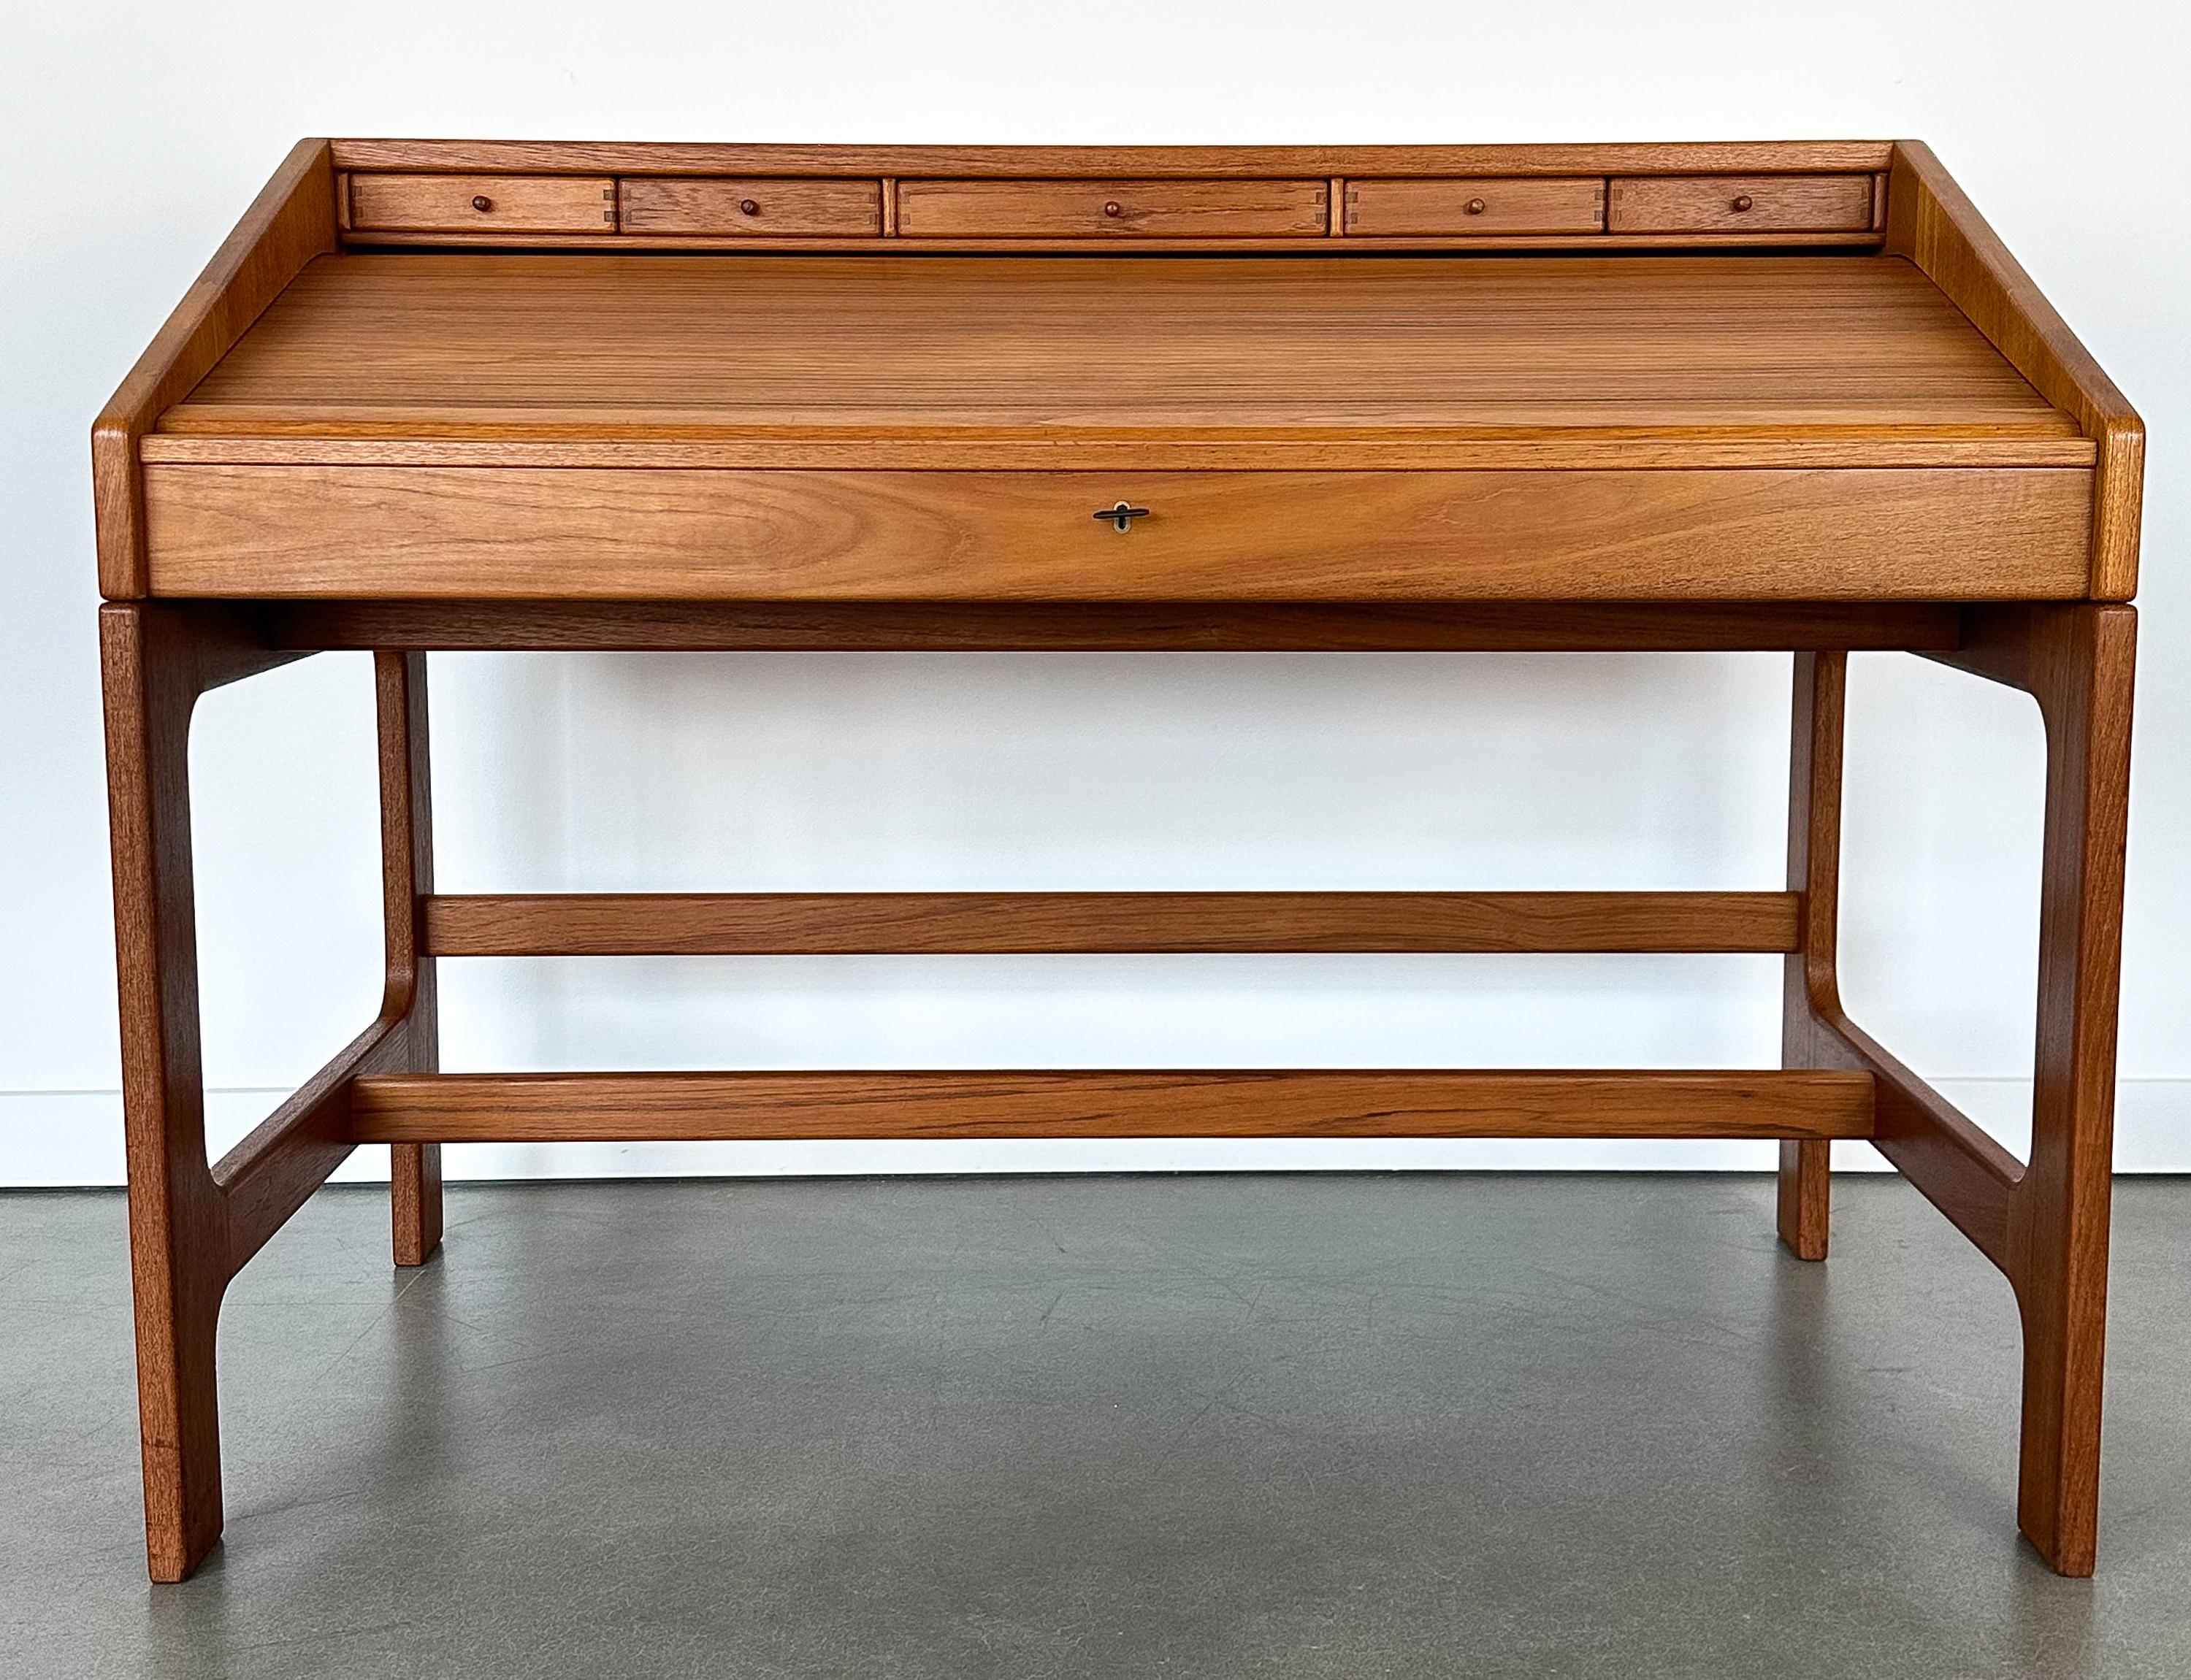 Danish Modern solid teak roll top desk by John Mortensen for Langeskov Mobelfabrik.  Designed in 1987.  Model: 